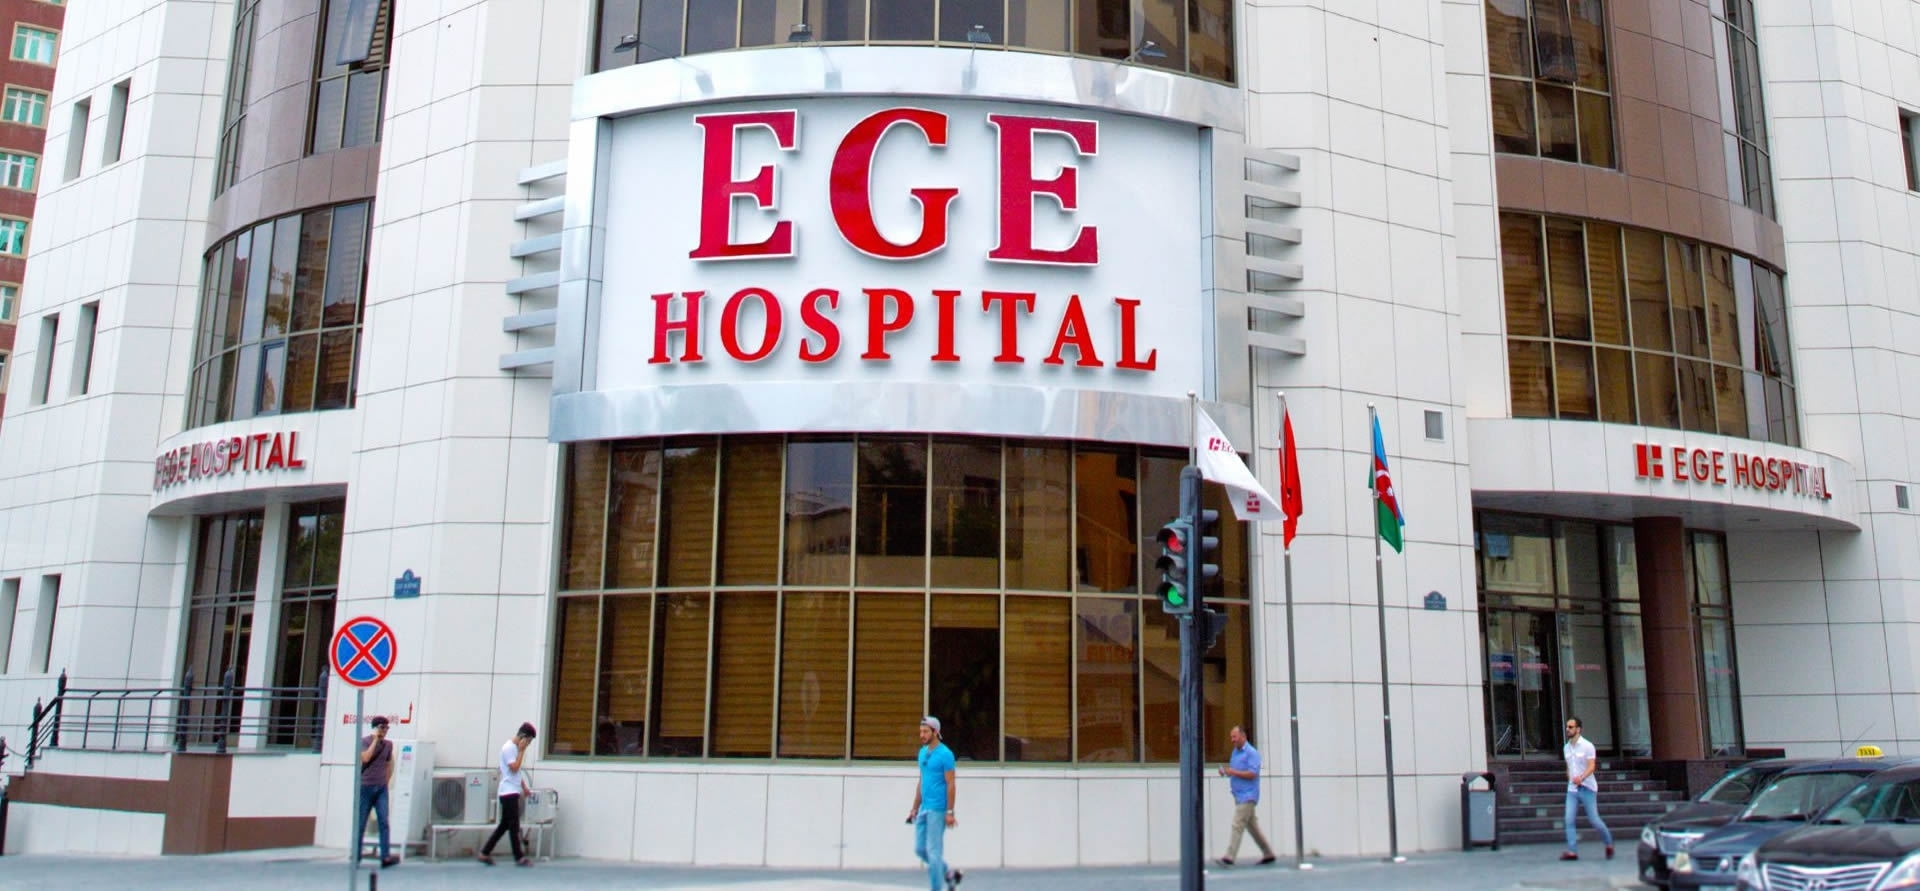 Проходивший лечение в Ege hospital 20-летний парень скончался